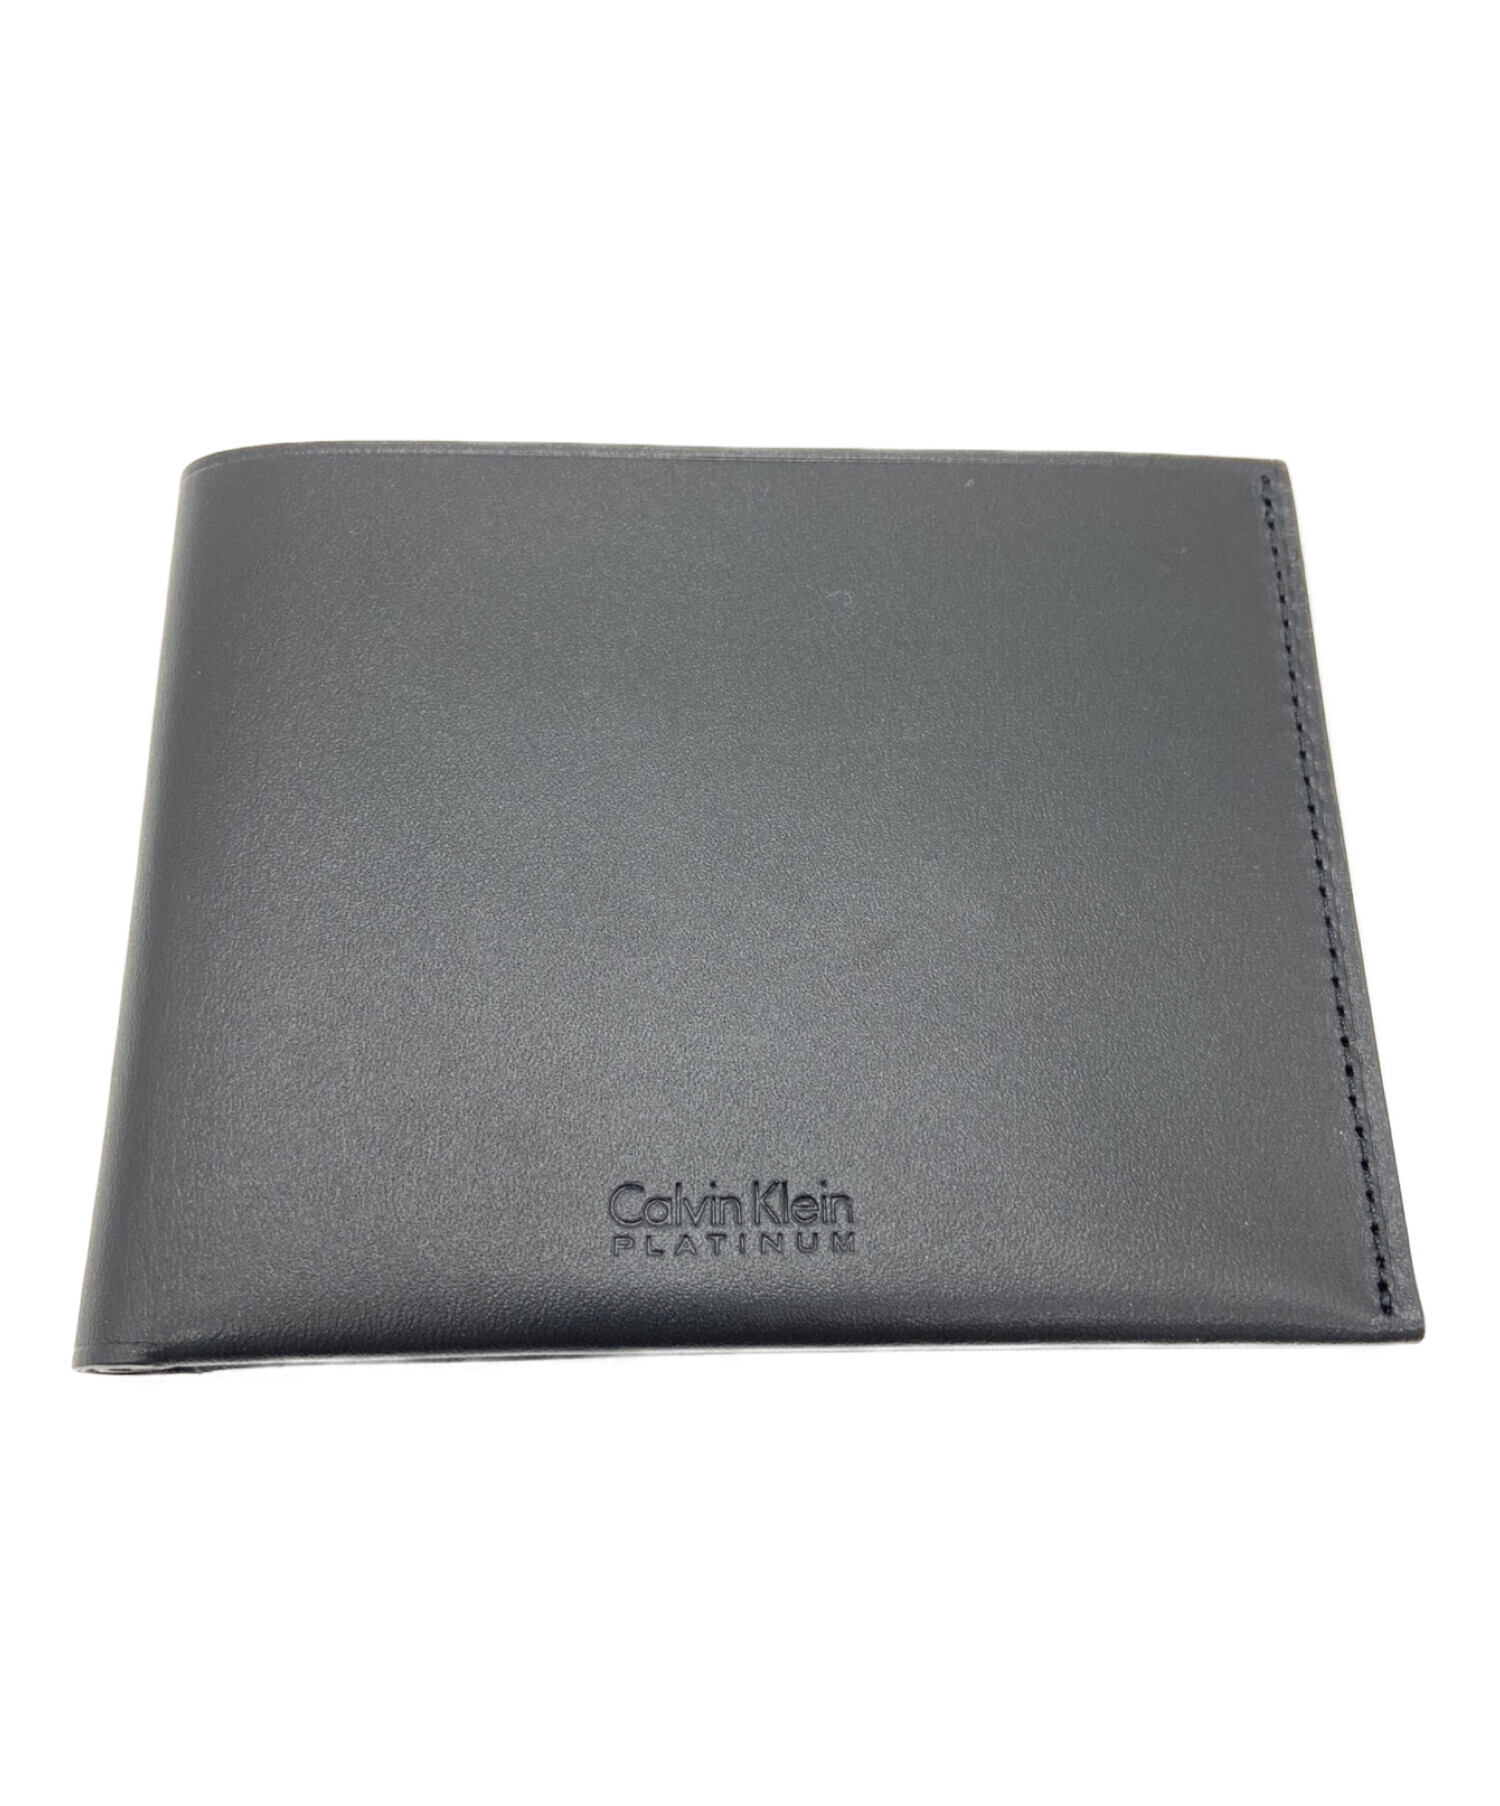 ck Calvin Klein (シーケーカルバンクライン) 2つ折り財布 ブラック サイズ:下記参照